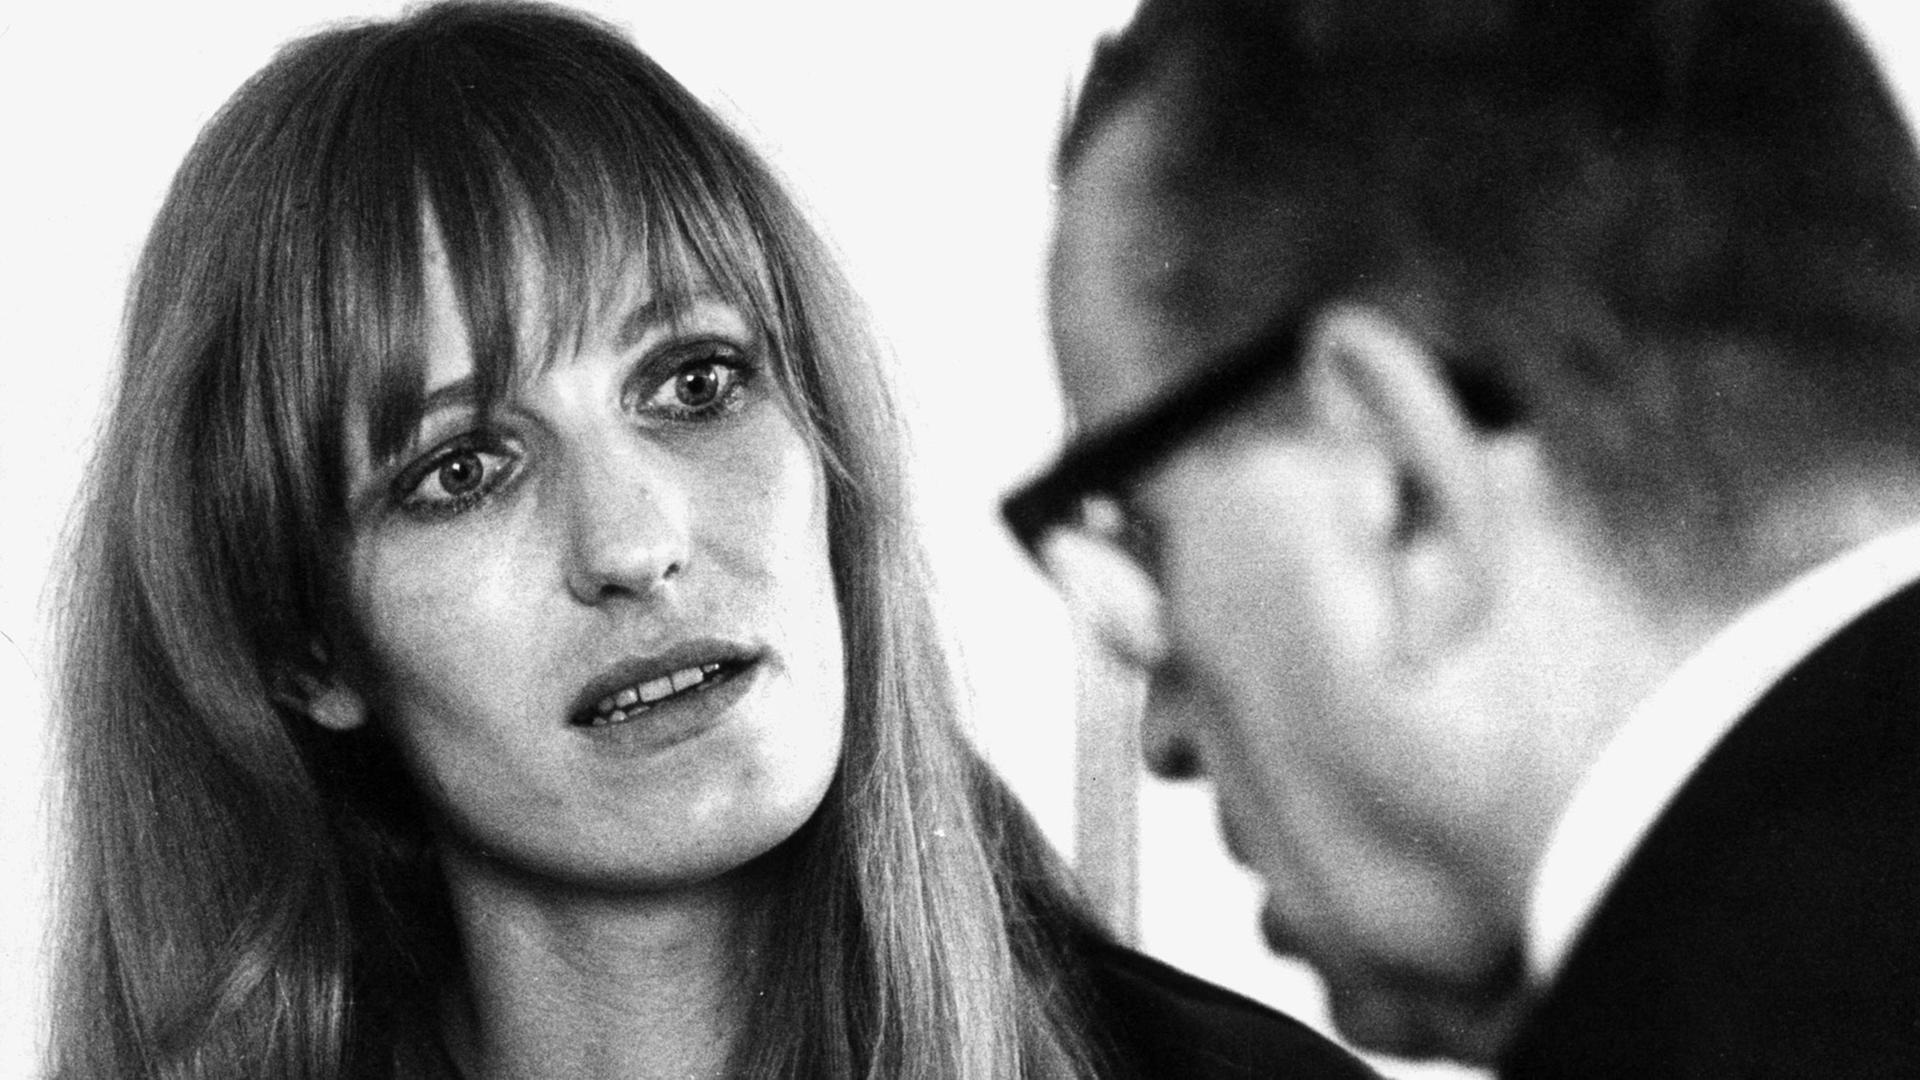 Gudrun Ensslin bei Gericht im Gespräch mit ihrem Verteidiger, 1968.